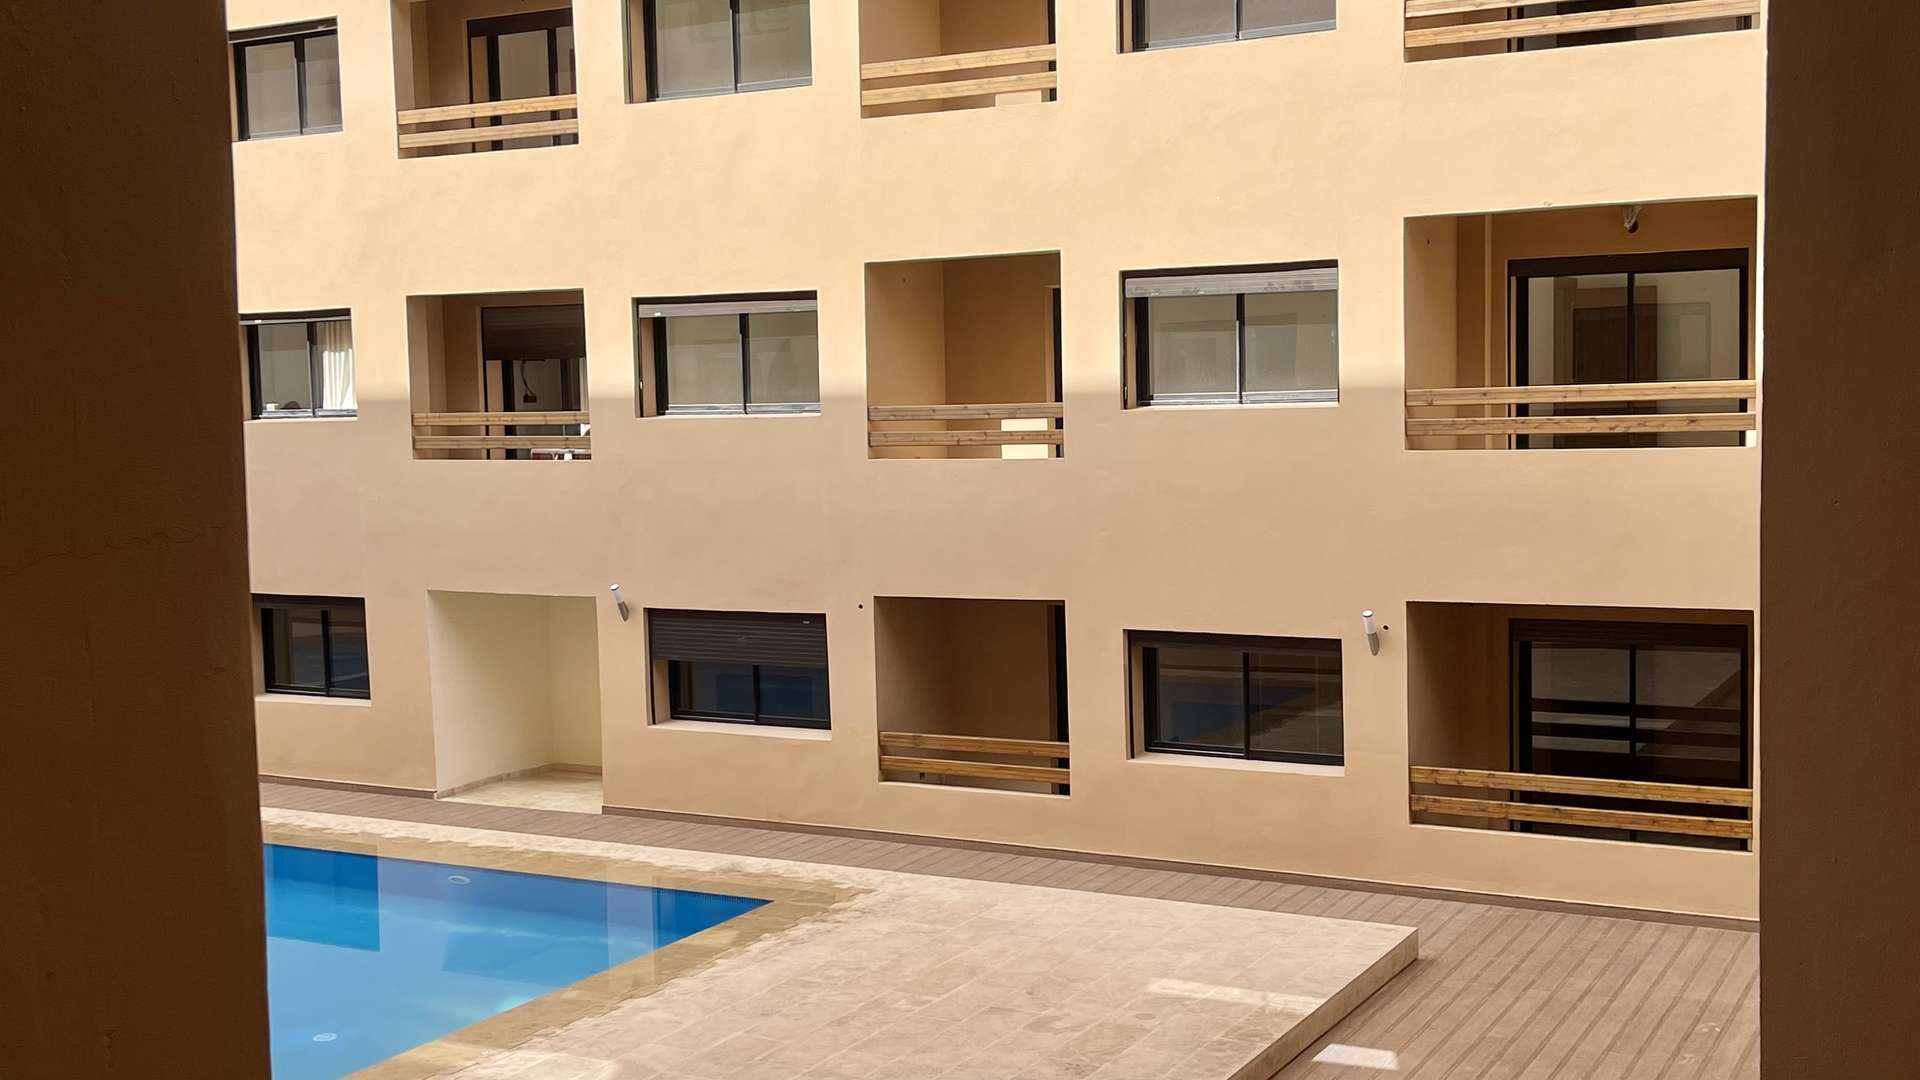 Location longue durée ,Appartement,Appartement Neuf jamais habité situé dans une Nouvelle Résidence avec piscine près de la Gare de Marrakech,Marrakech,Av. Hassan II